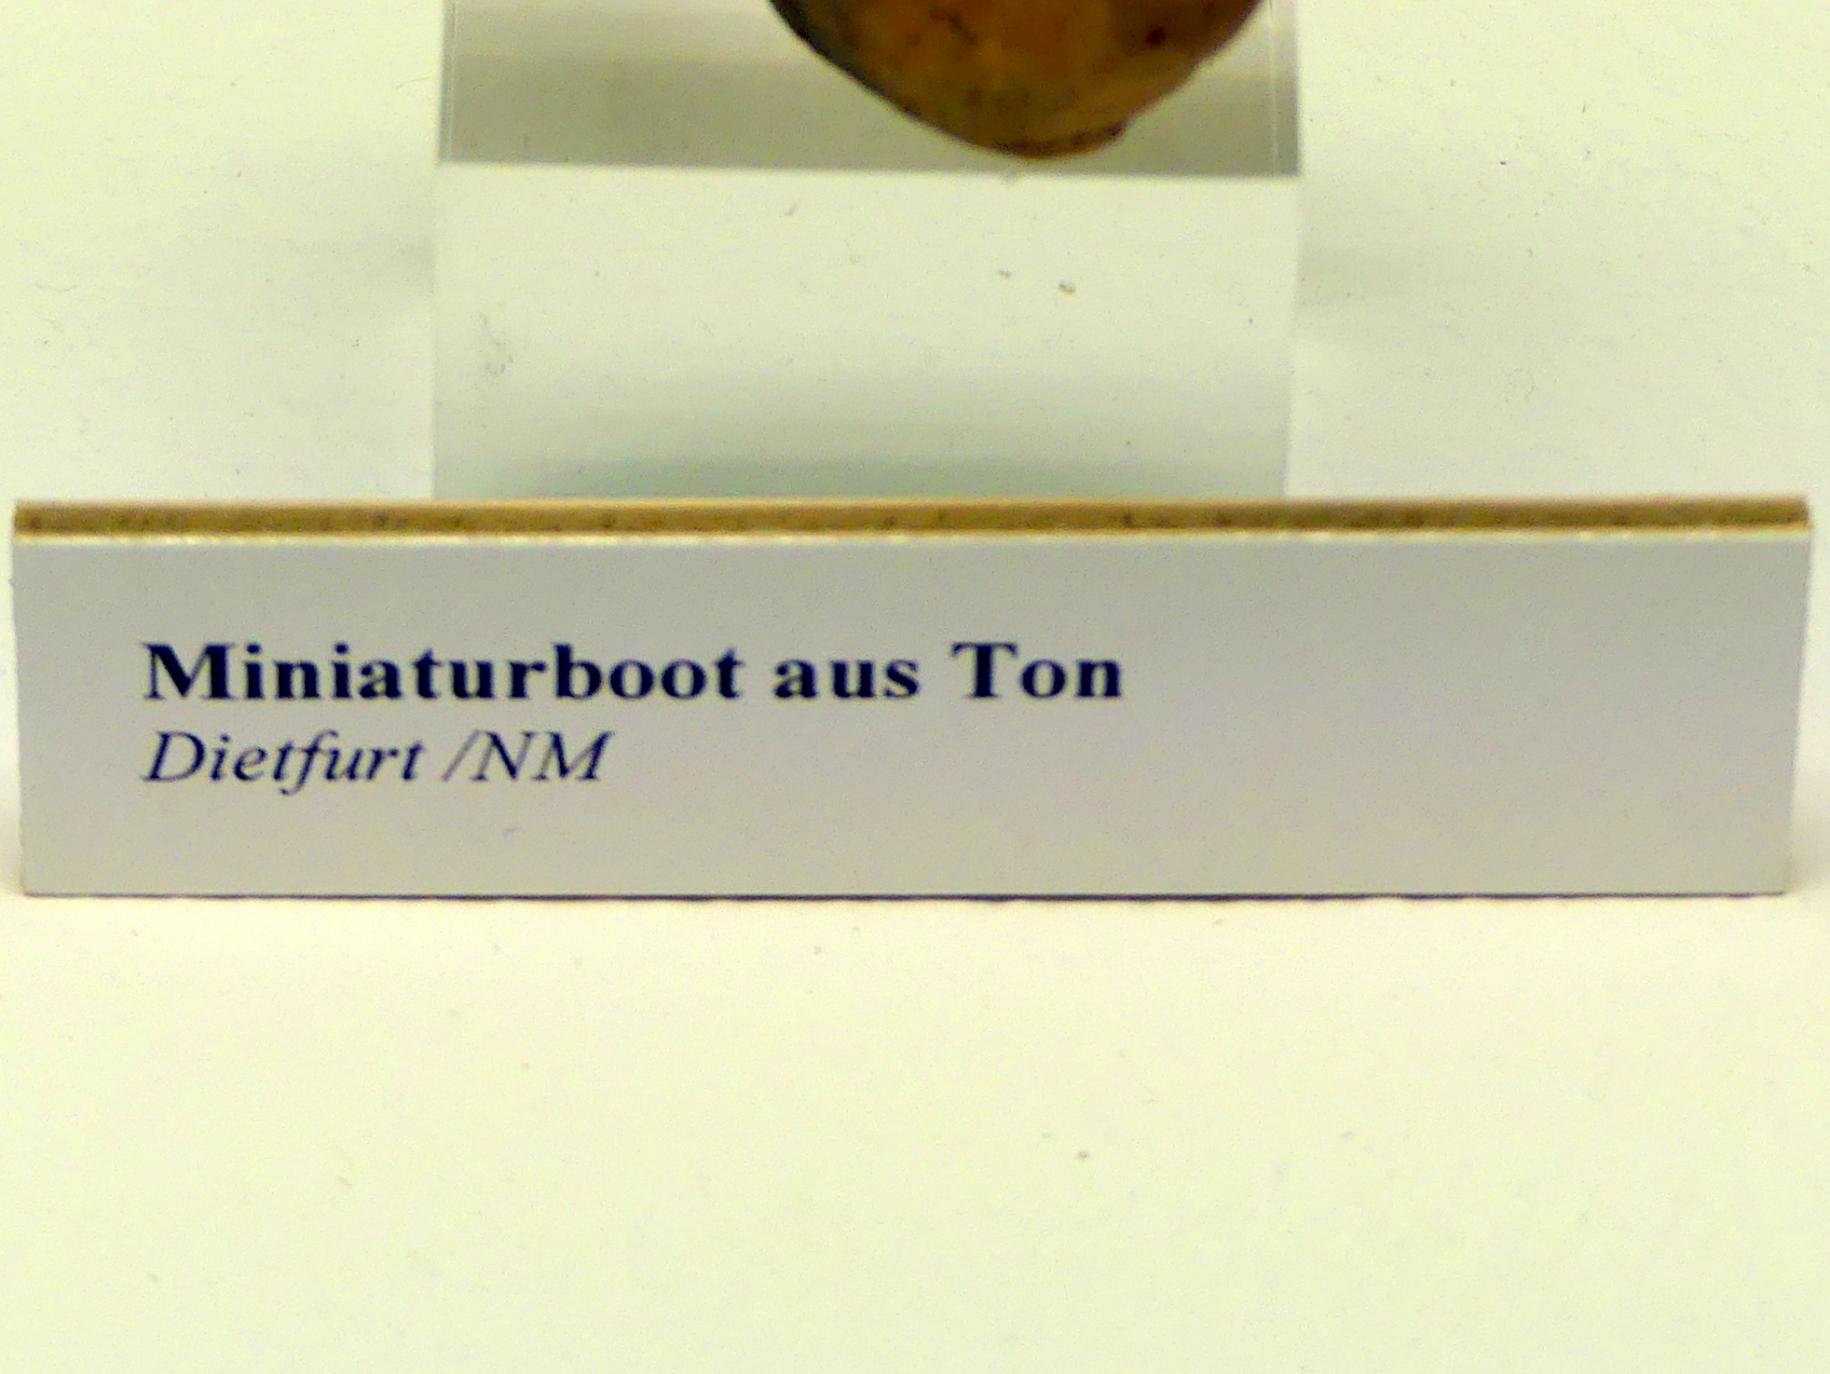 Miniaturboot aus Ton, Hallstattzeit, 700 - 200 v. Chr., Bild 2/2